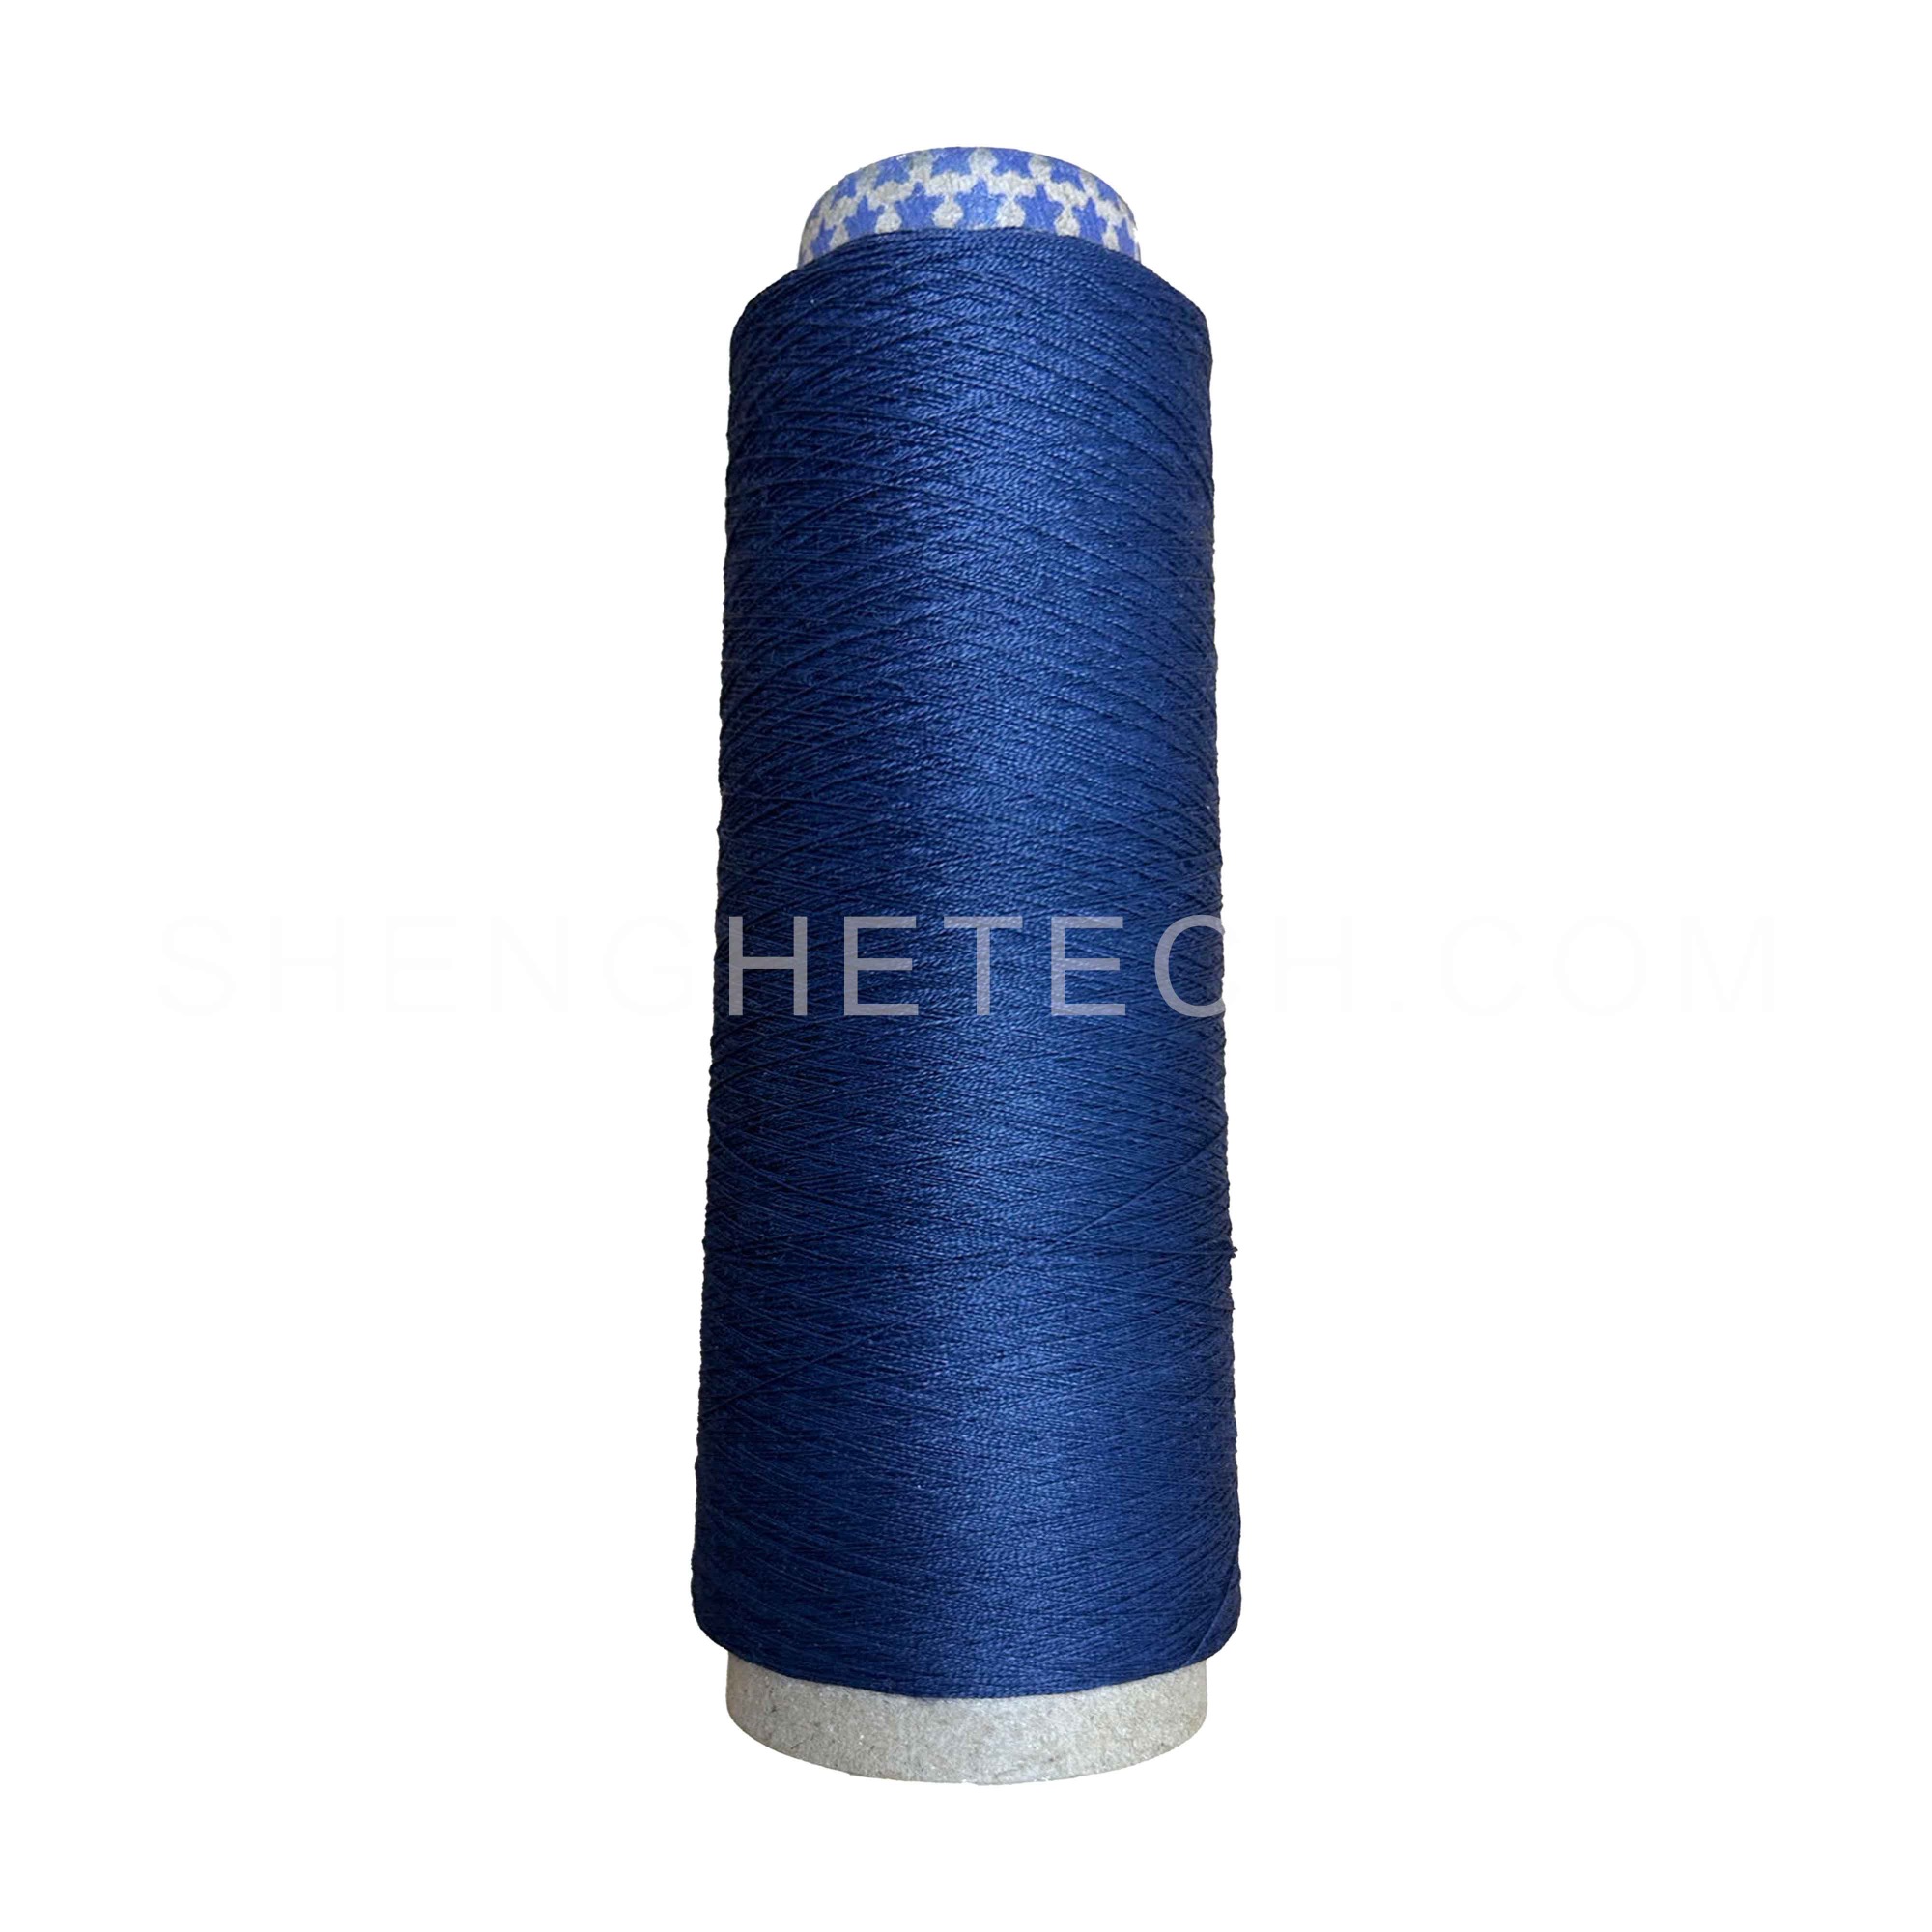 93% Meta-aramid 5% Para-aramid 2% Anti-static blended yarn